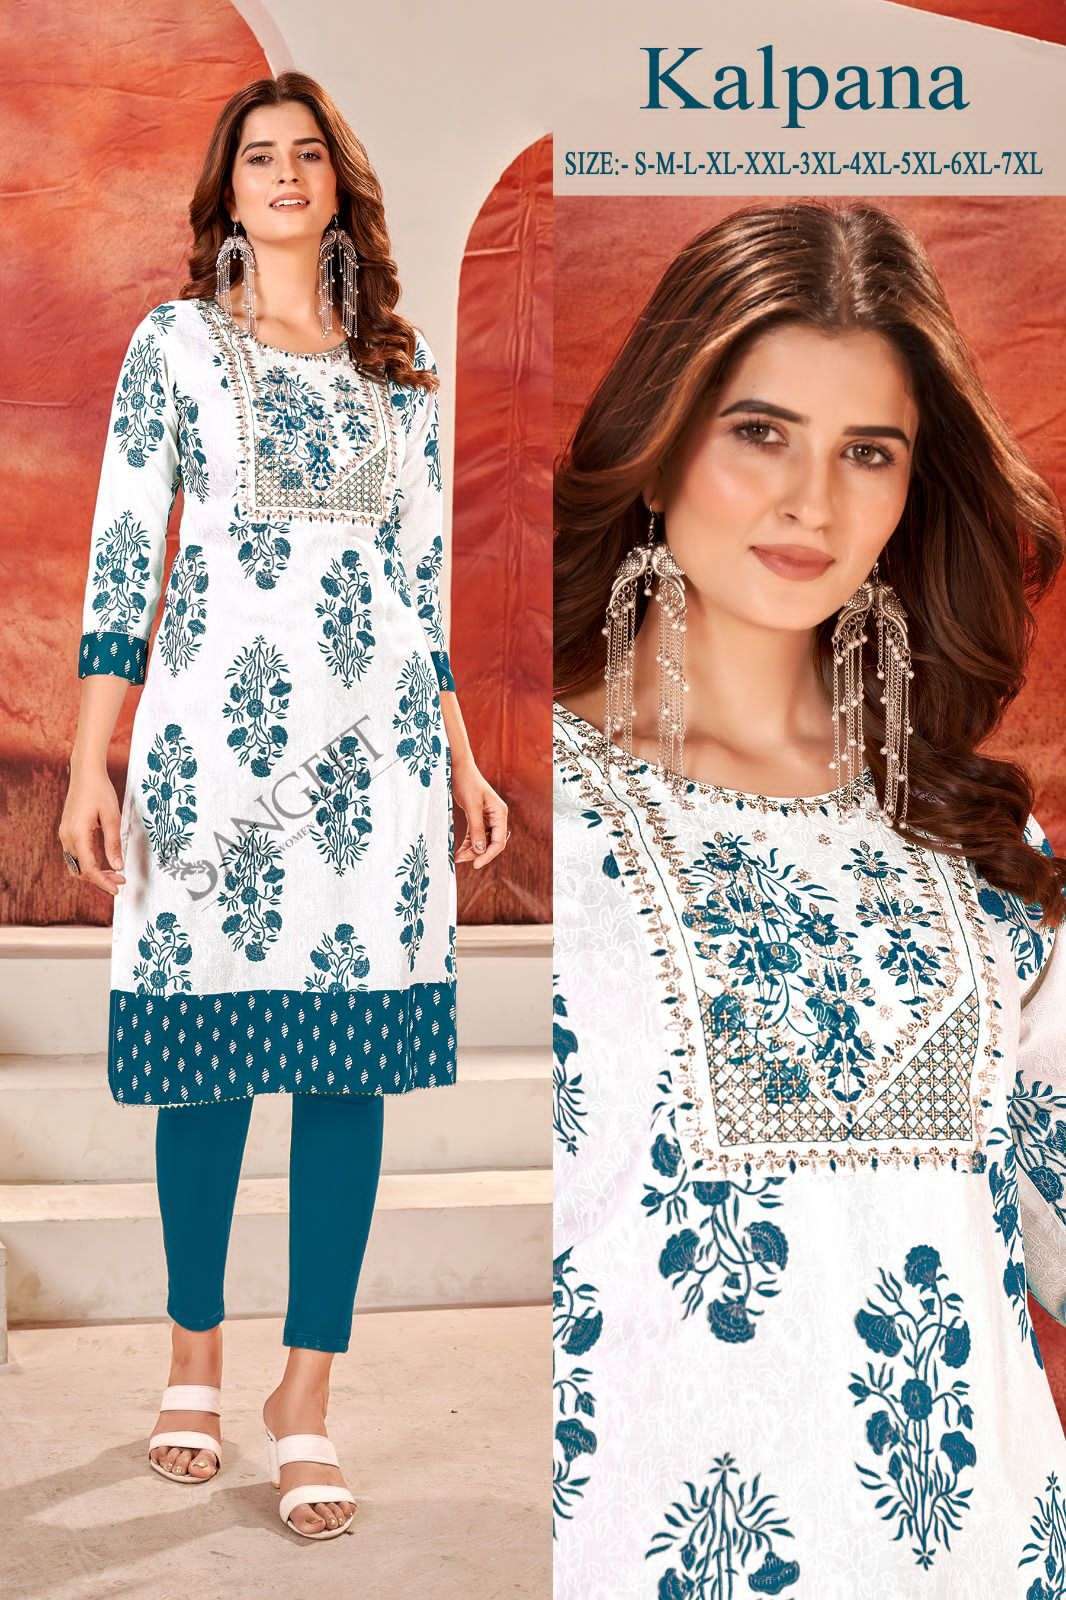 Buy Online Women's Fashion Khadi Cotton Long Two Layer Tunic Dress -  Zifiti.com 996442